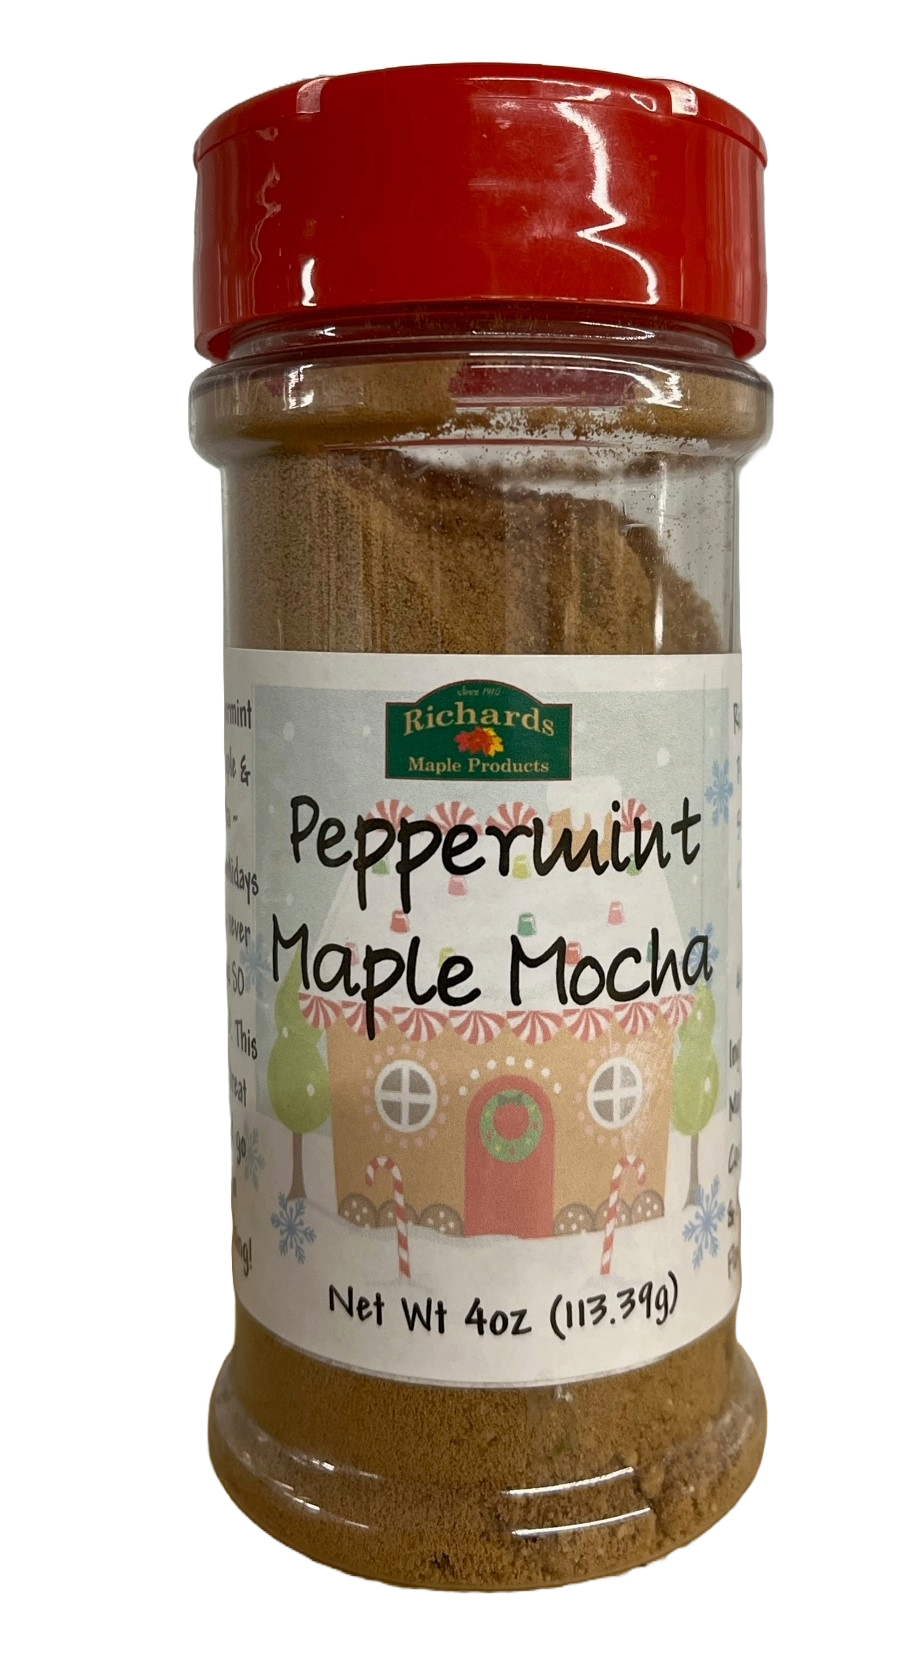 Peppermint Maple Mocha